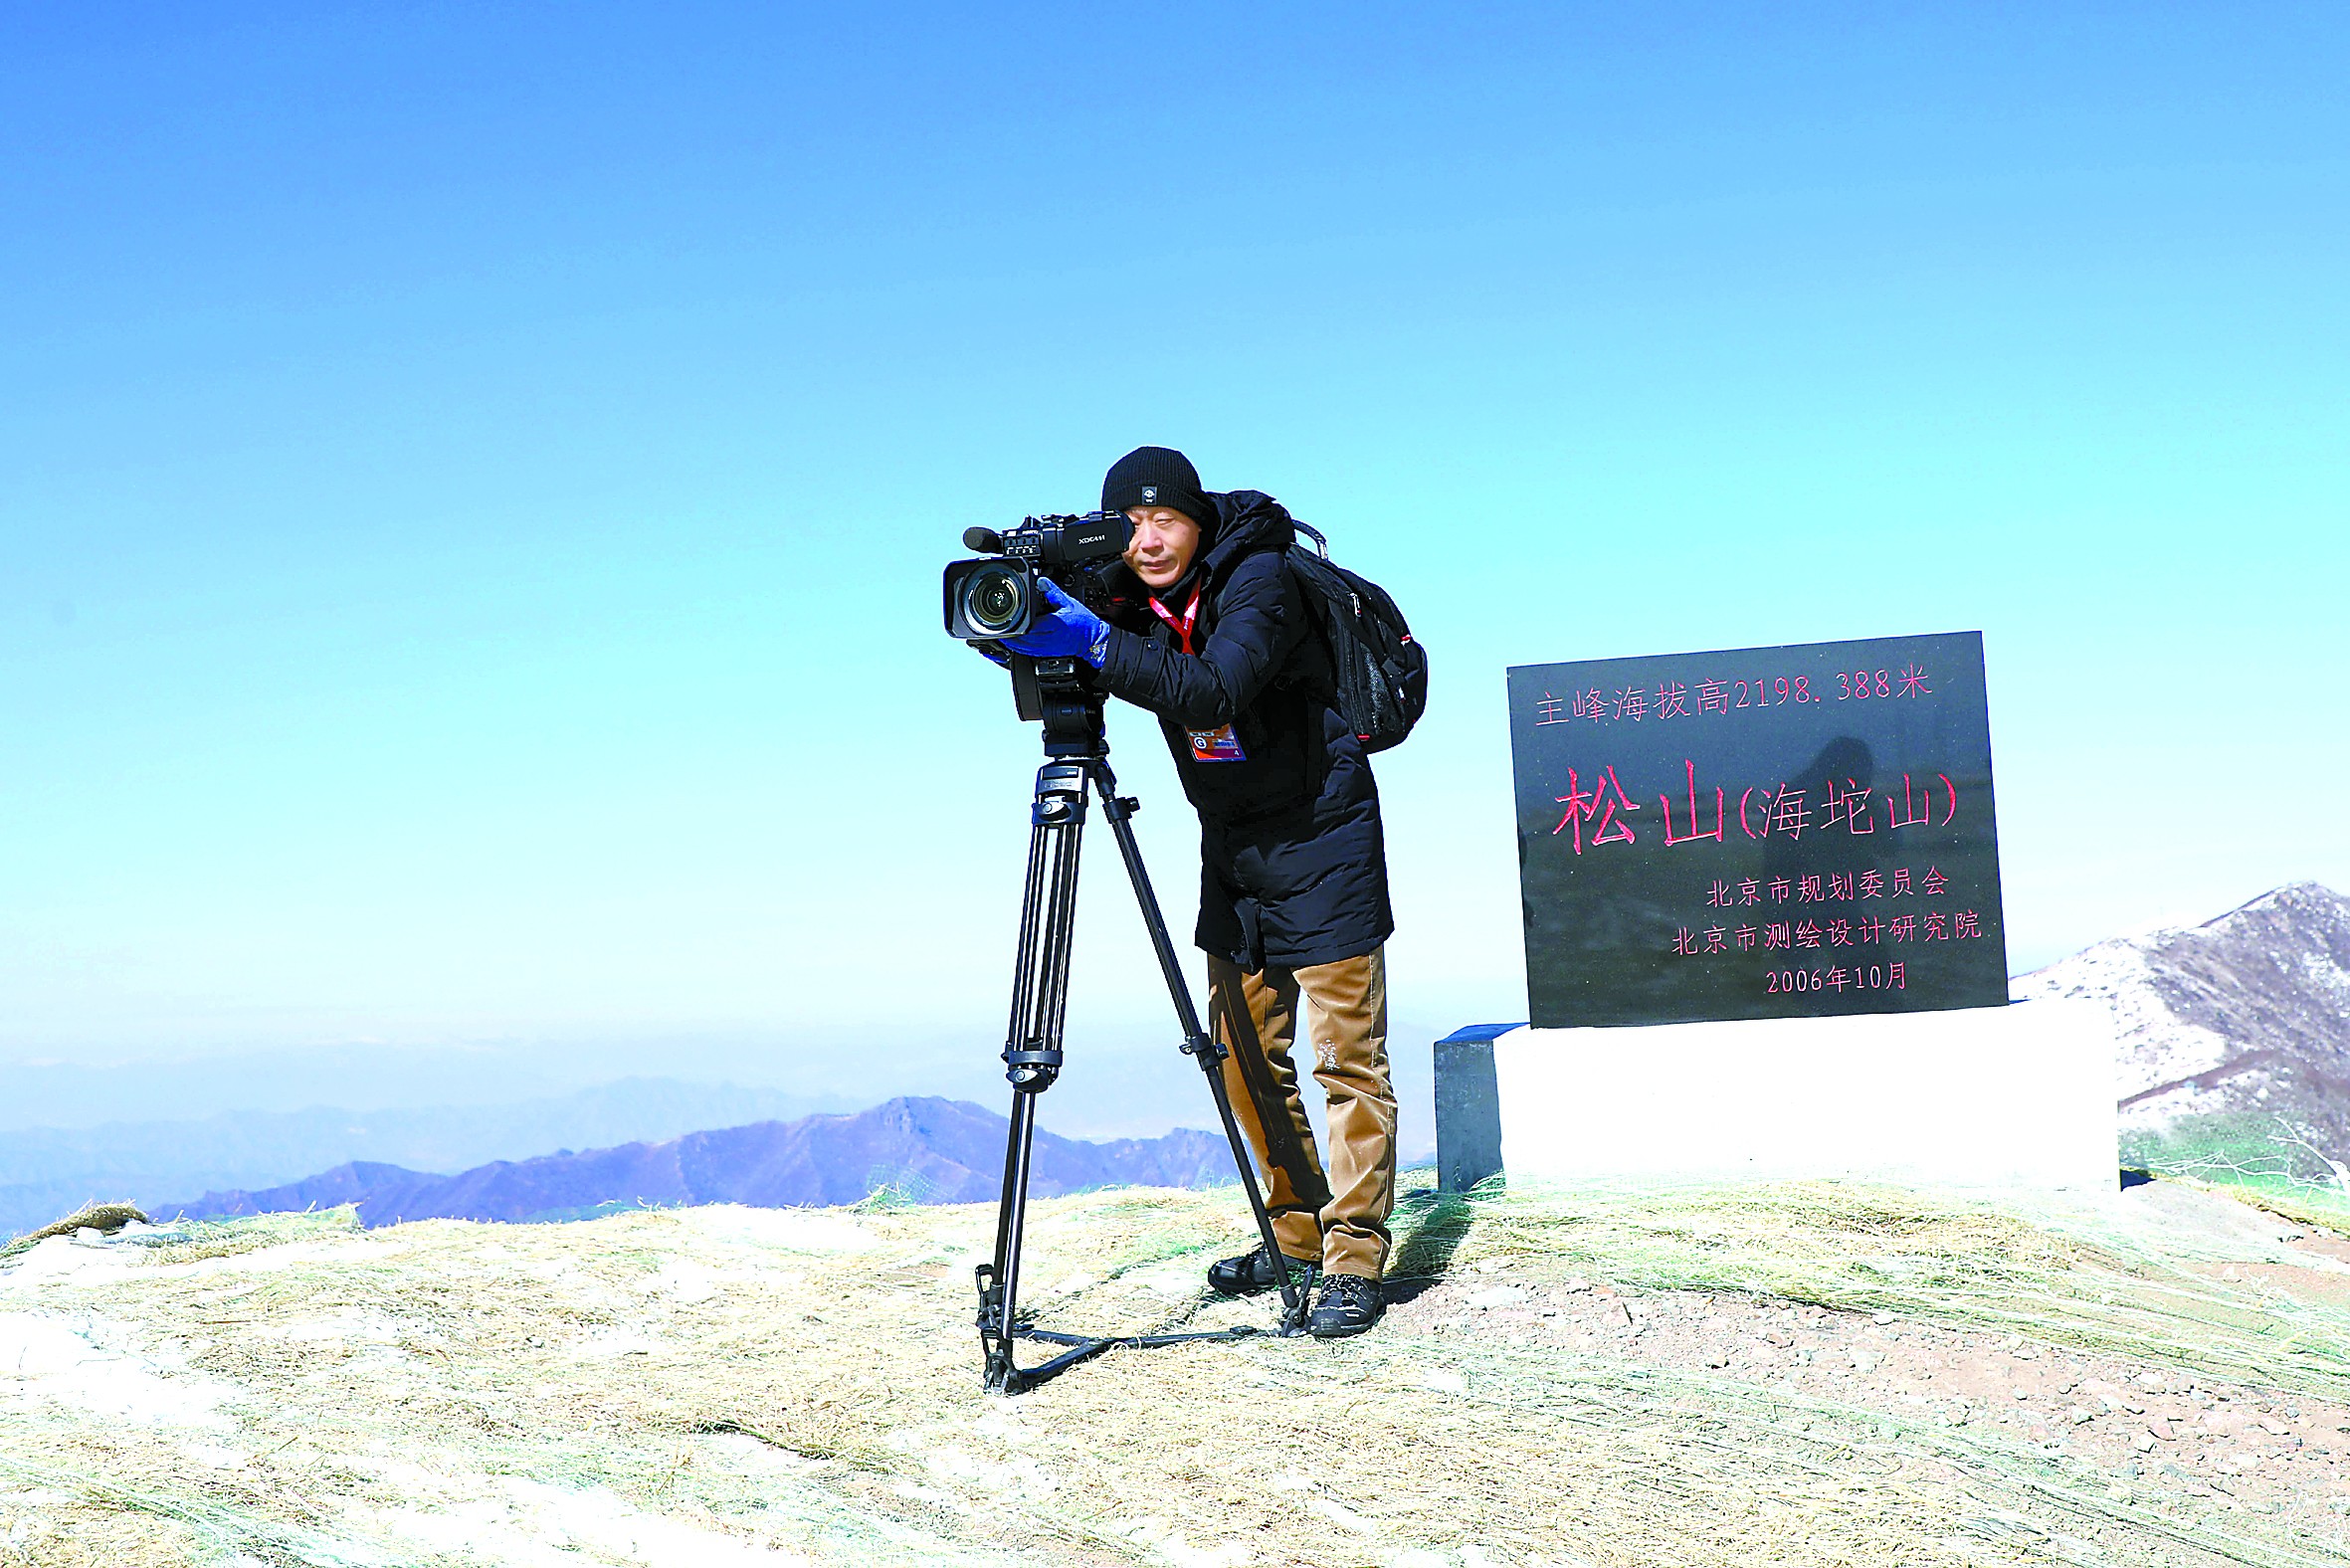 为参加北京冬奥会的摄影记者们寻找最佳拍摄位置的段学锋 “初心和使命要用脚步和坚守去书写”